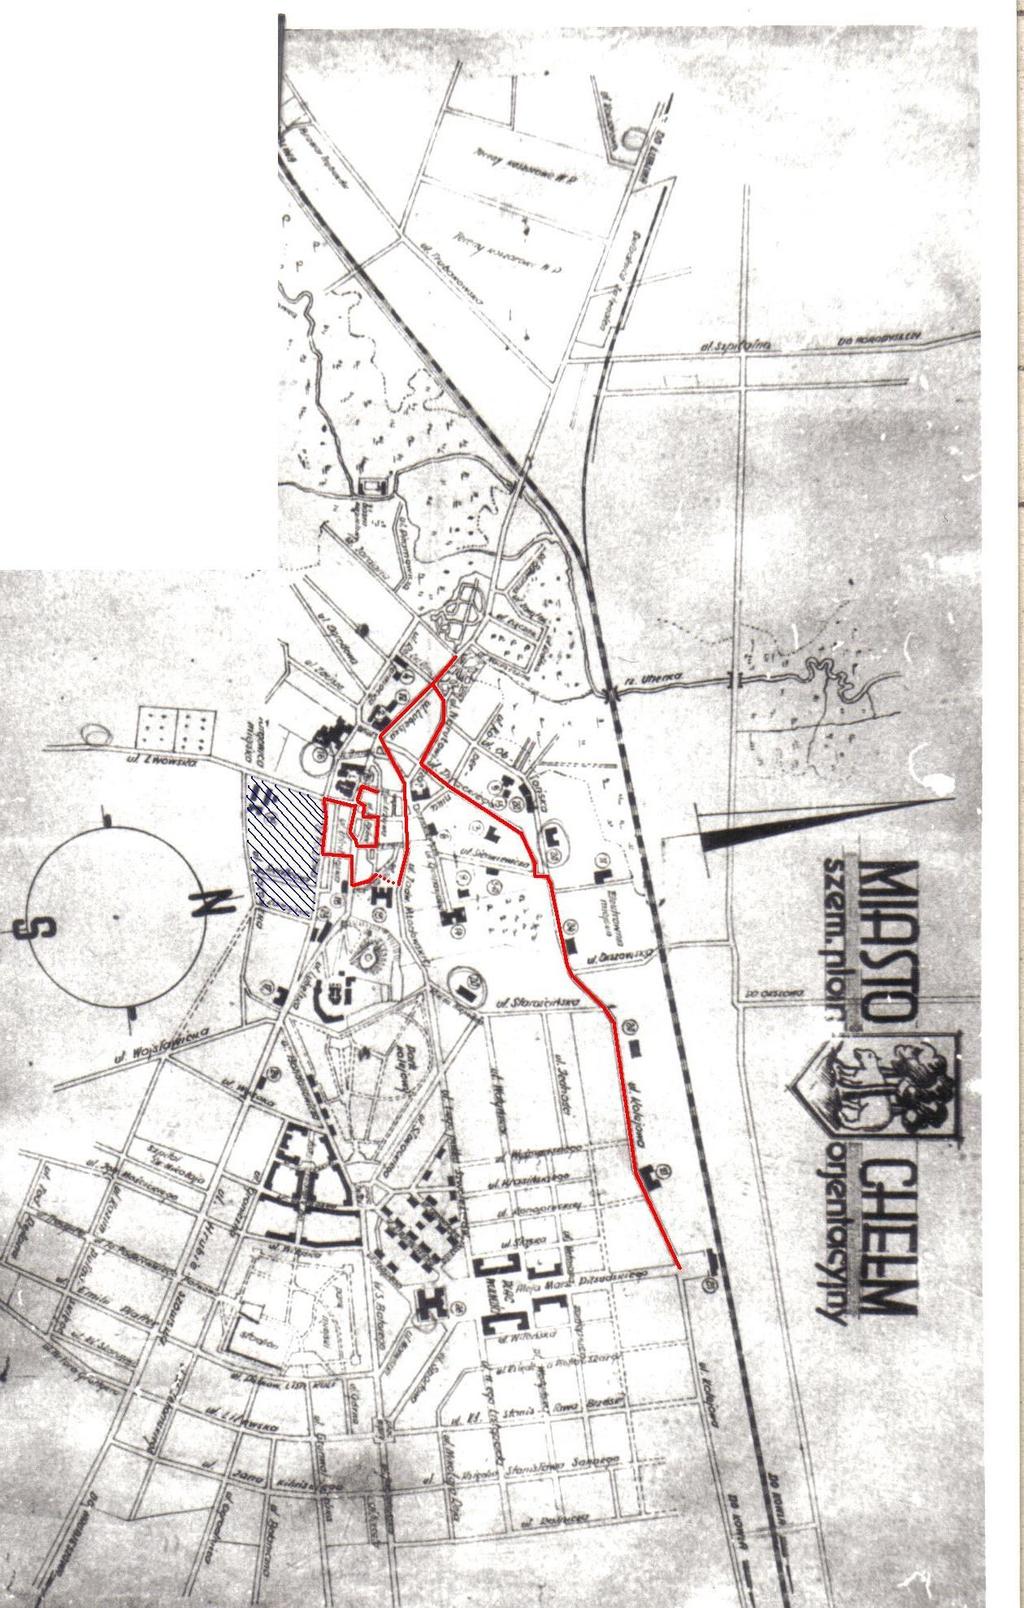 Mapa pochodzi ze zbiorów Działu Historii Muzeum